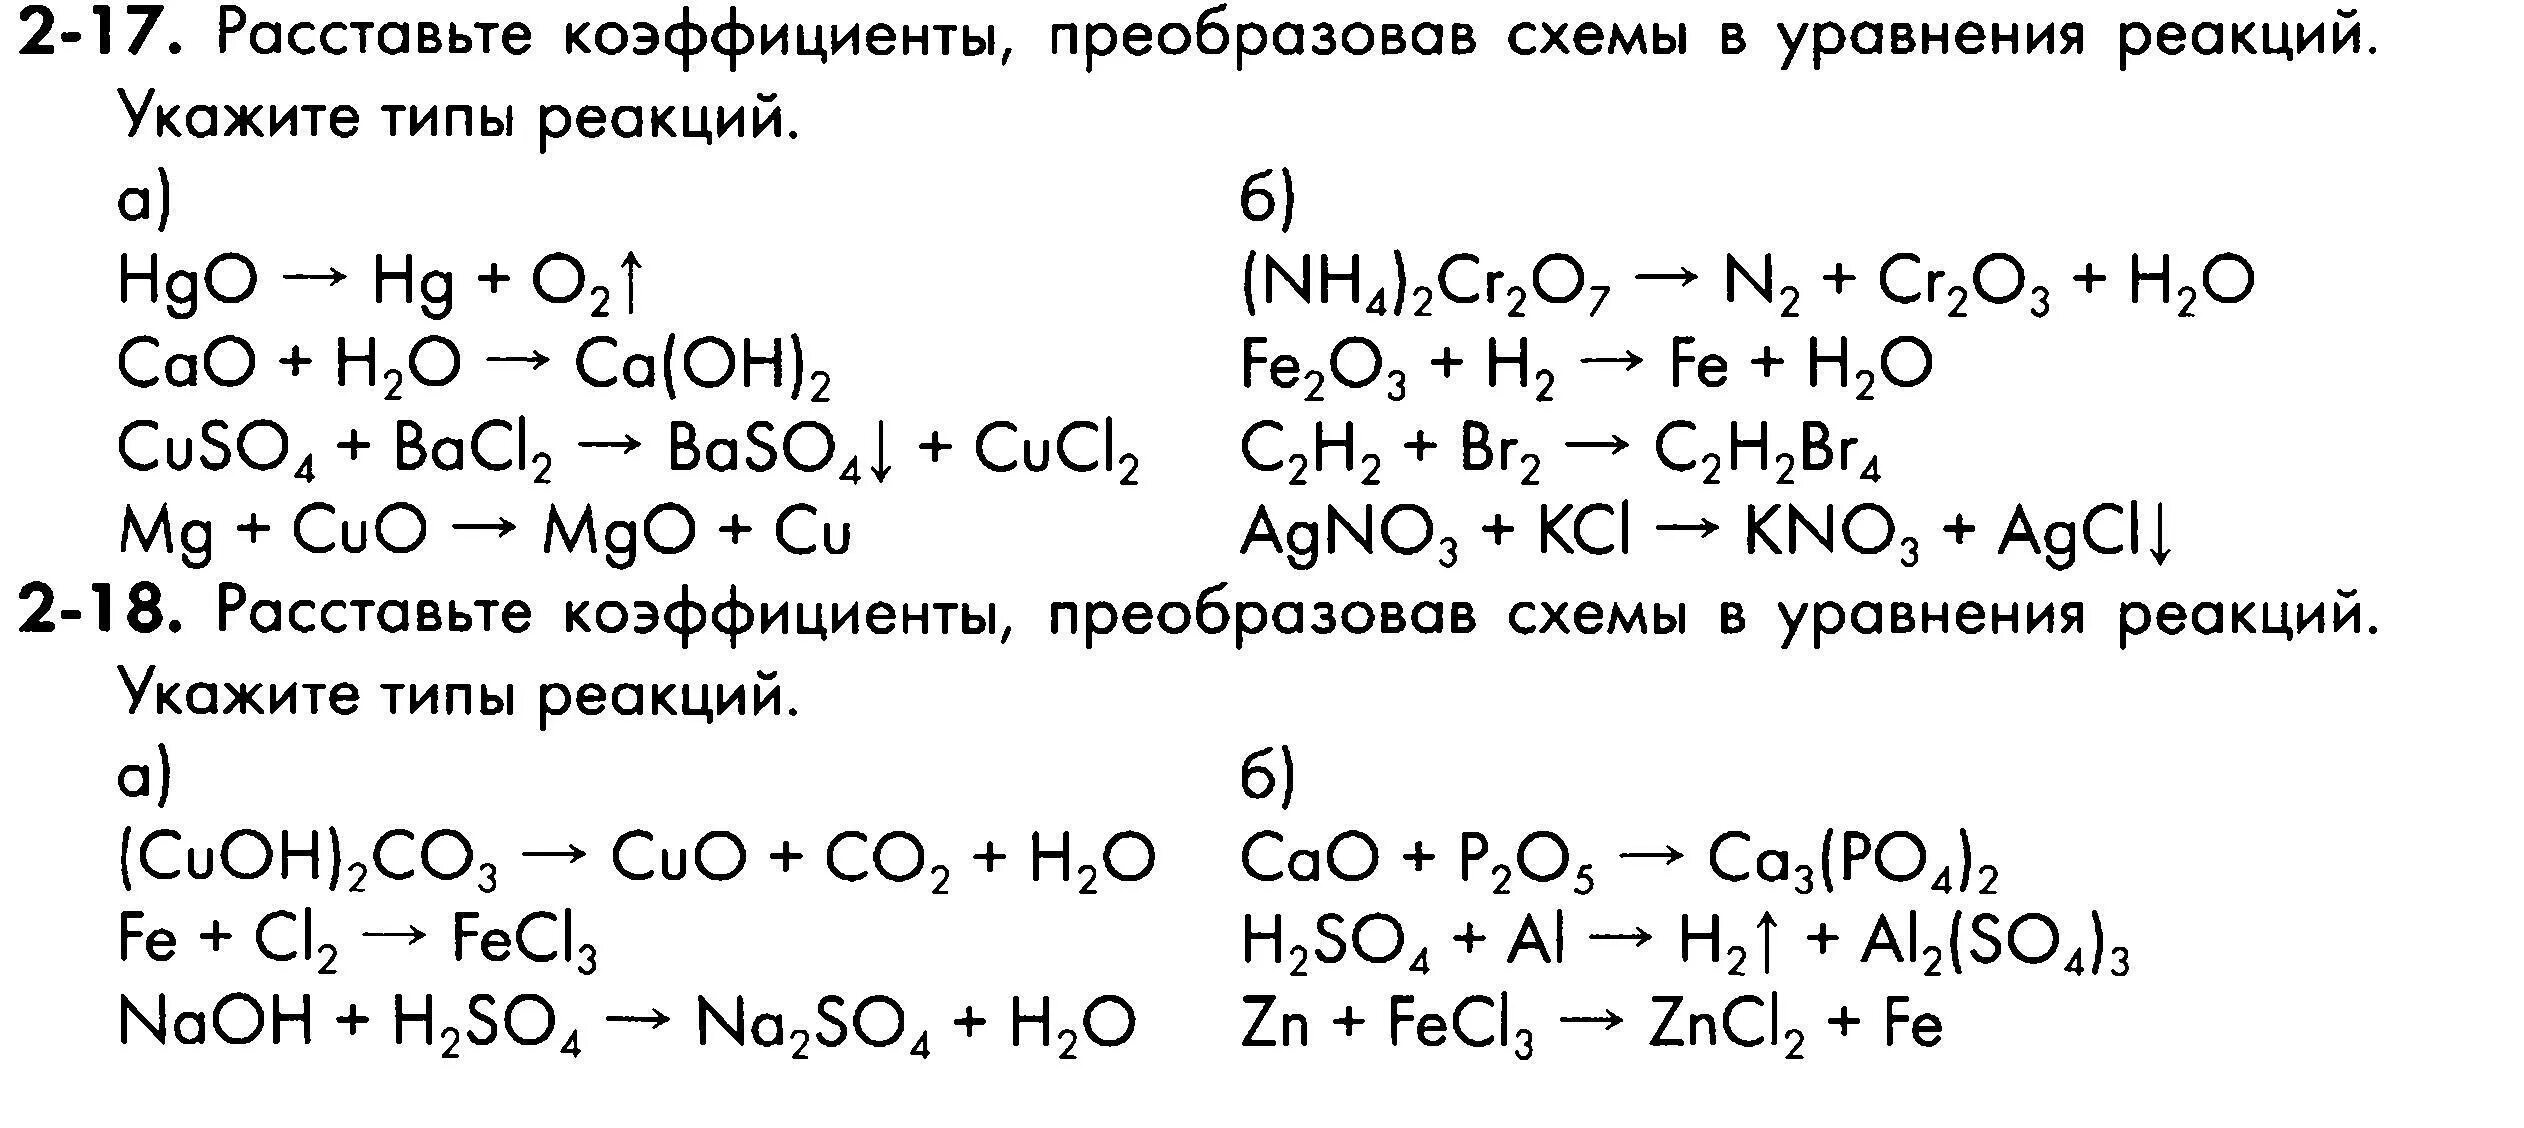 Уравнение реакции легкие. Уравнения химических реакций 8 класс задания. Химия 8 класс схемы химических реакций. Химия схема реакций уравнений. Уравнения реакций химия 8 класс.